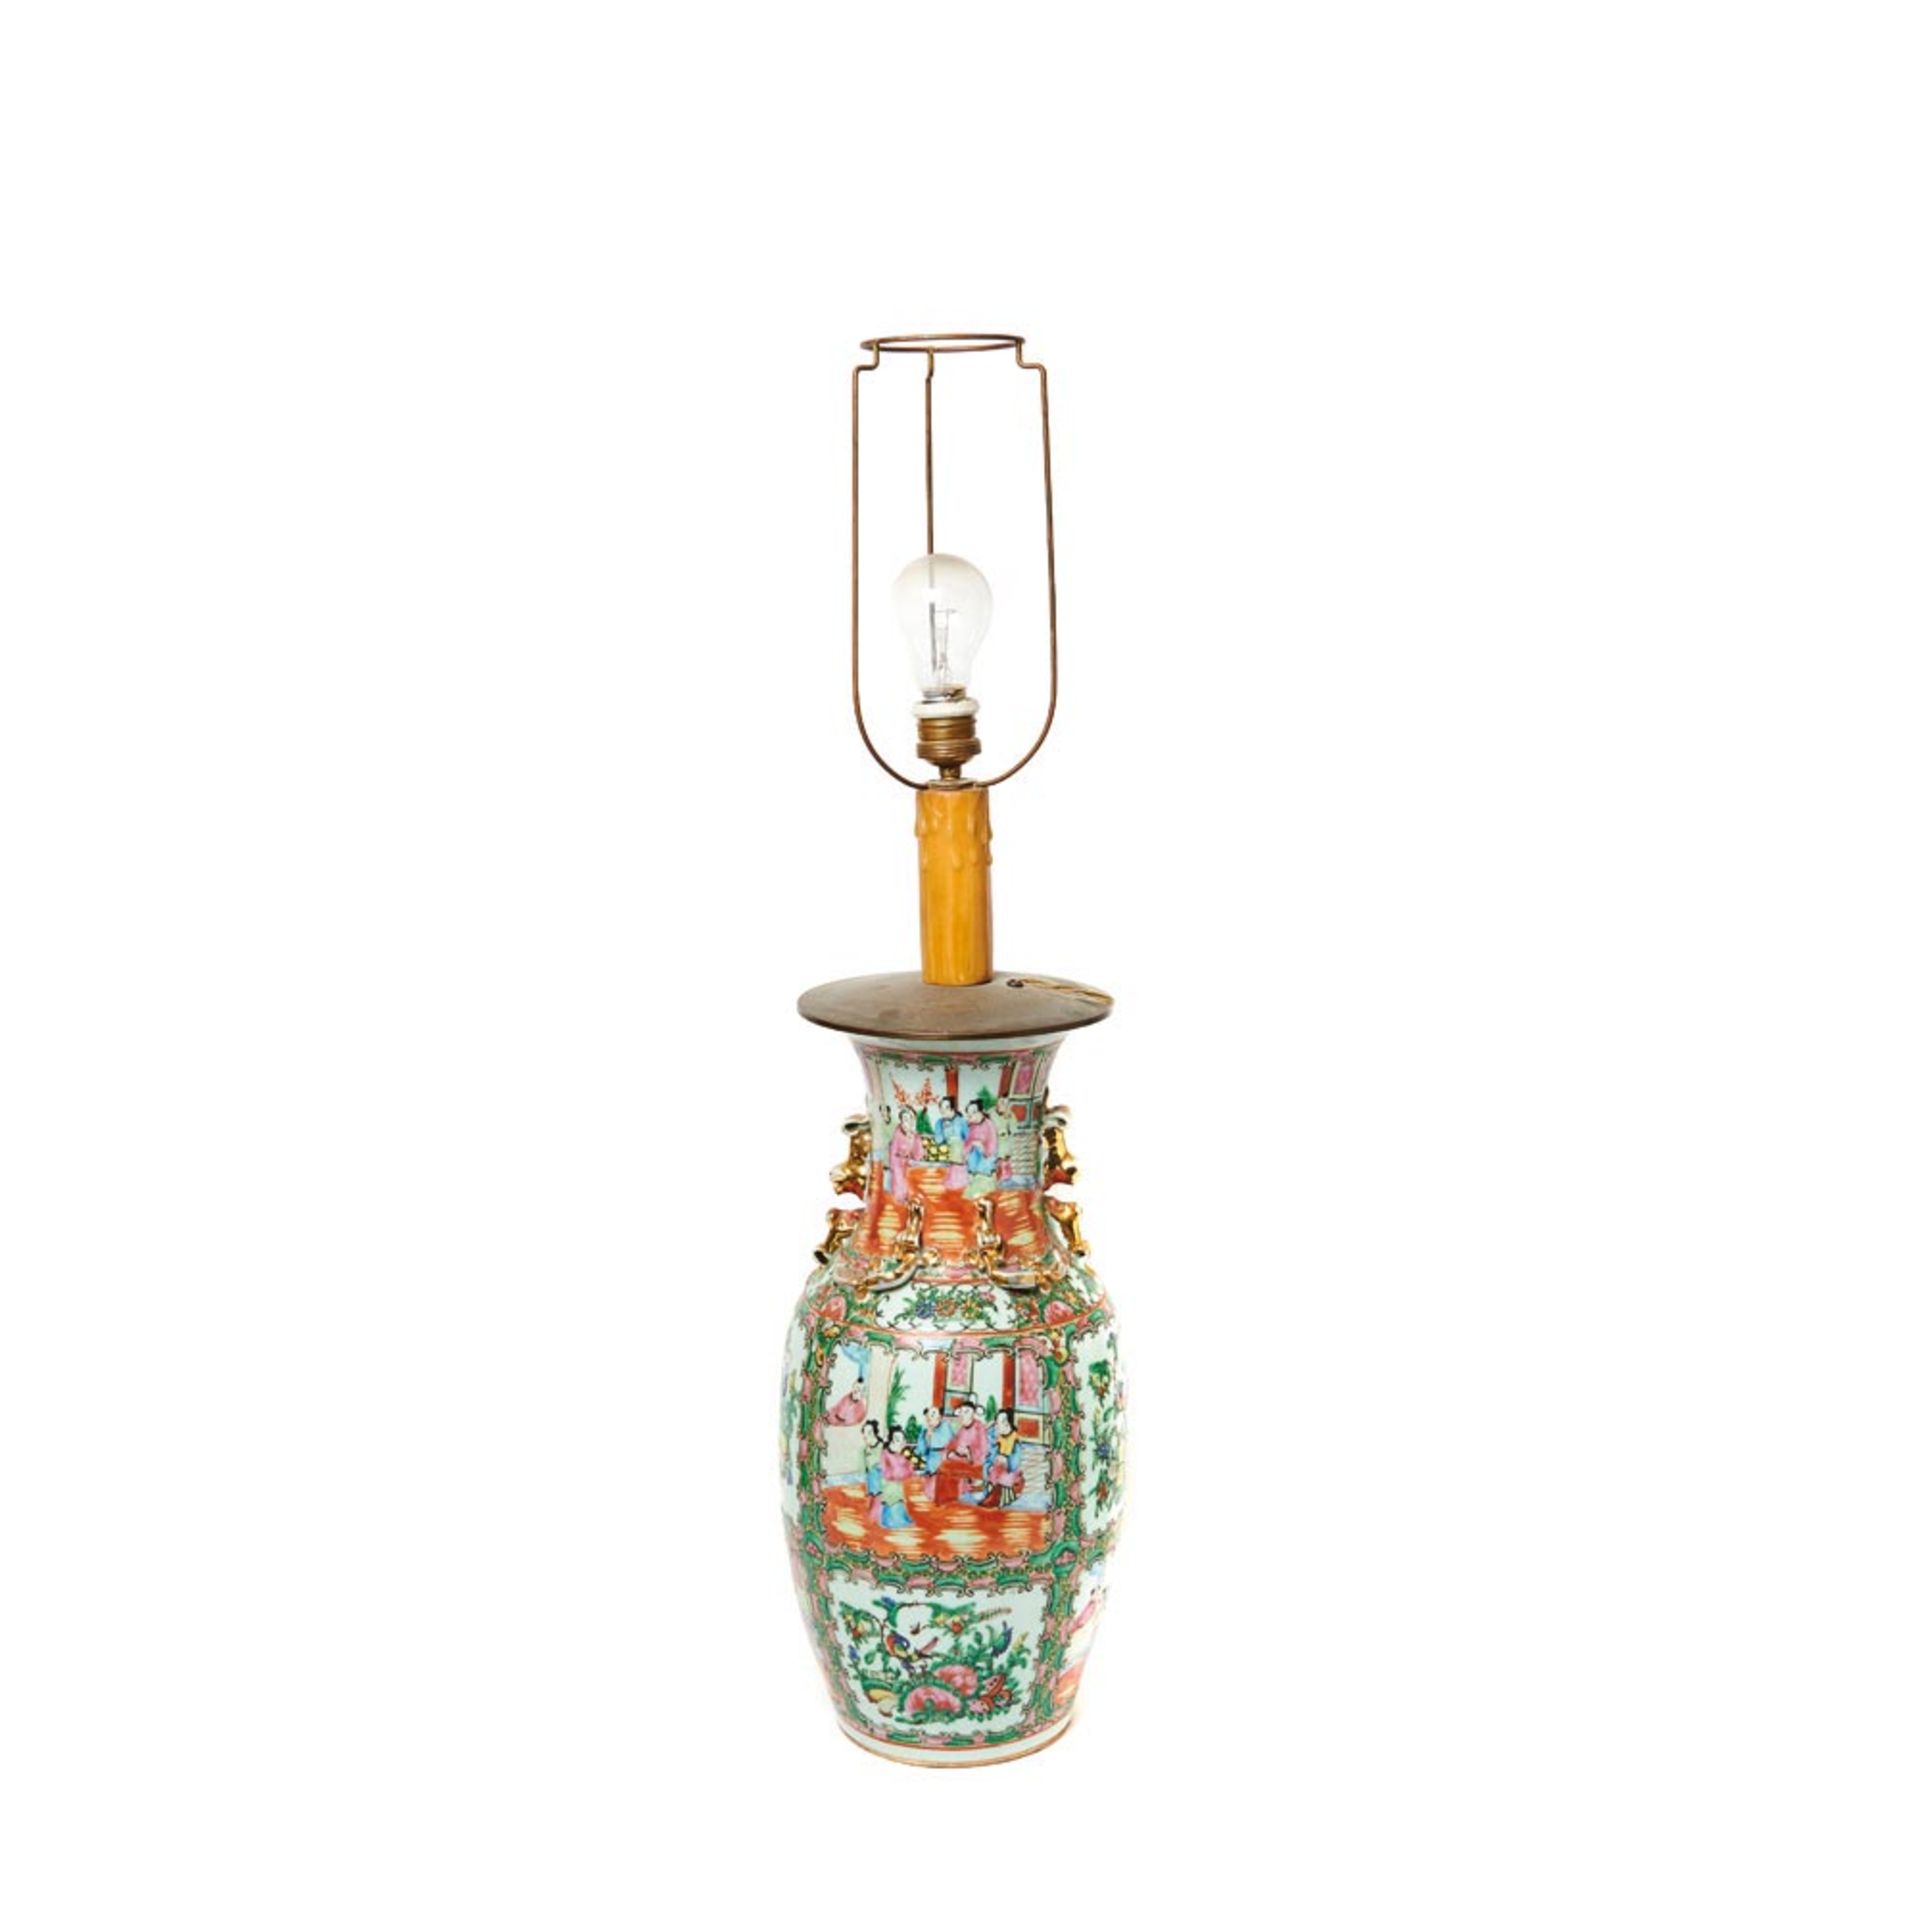 Jarrón chino adaptado a lámpara de sobremesa en porcelana de Cantón con decoración de escenas